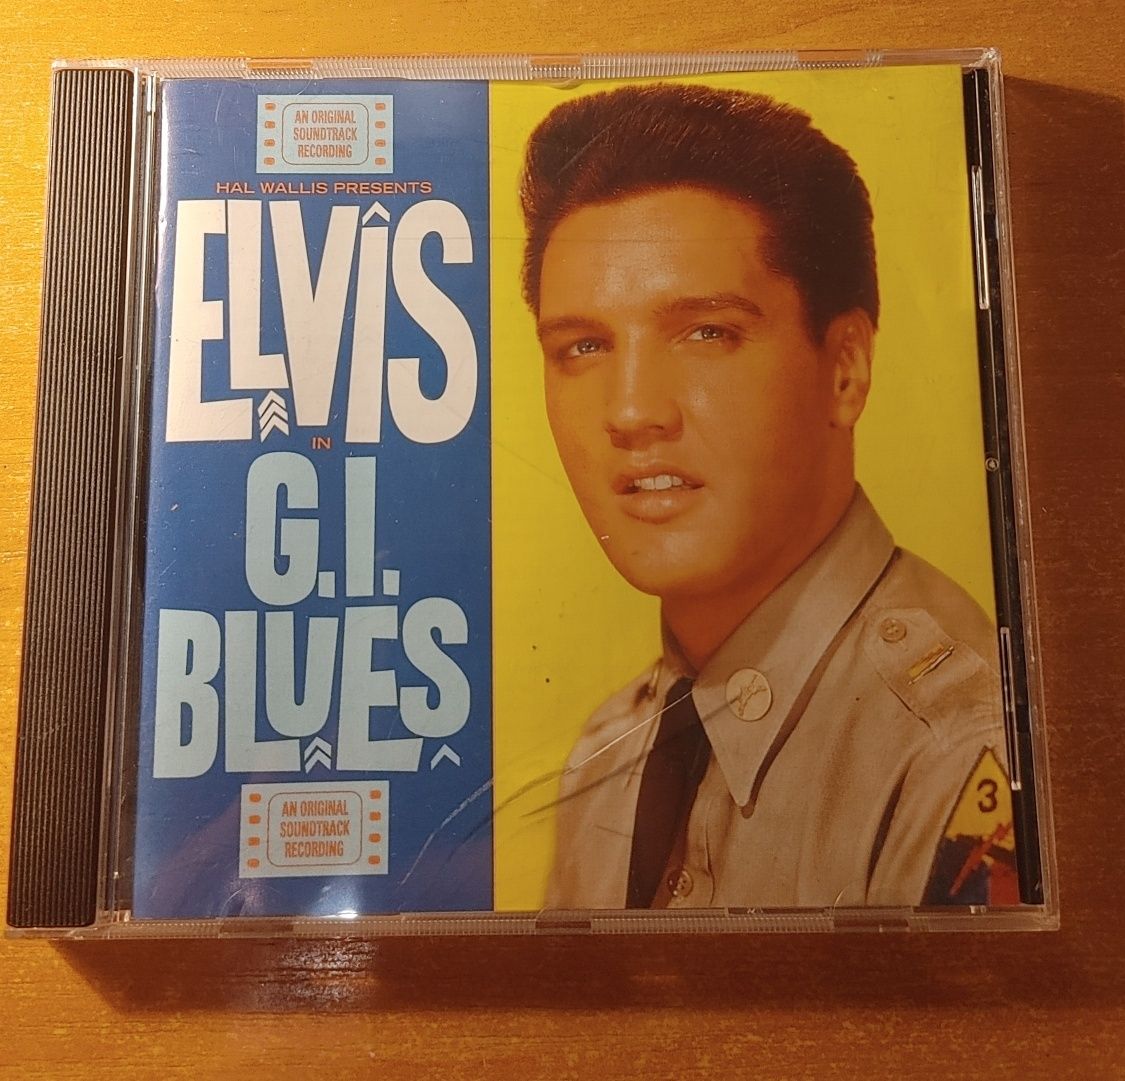 płyta cd Elvis Presley in G.IBLUES